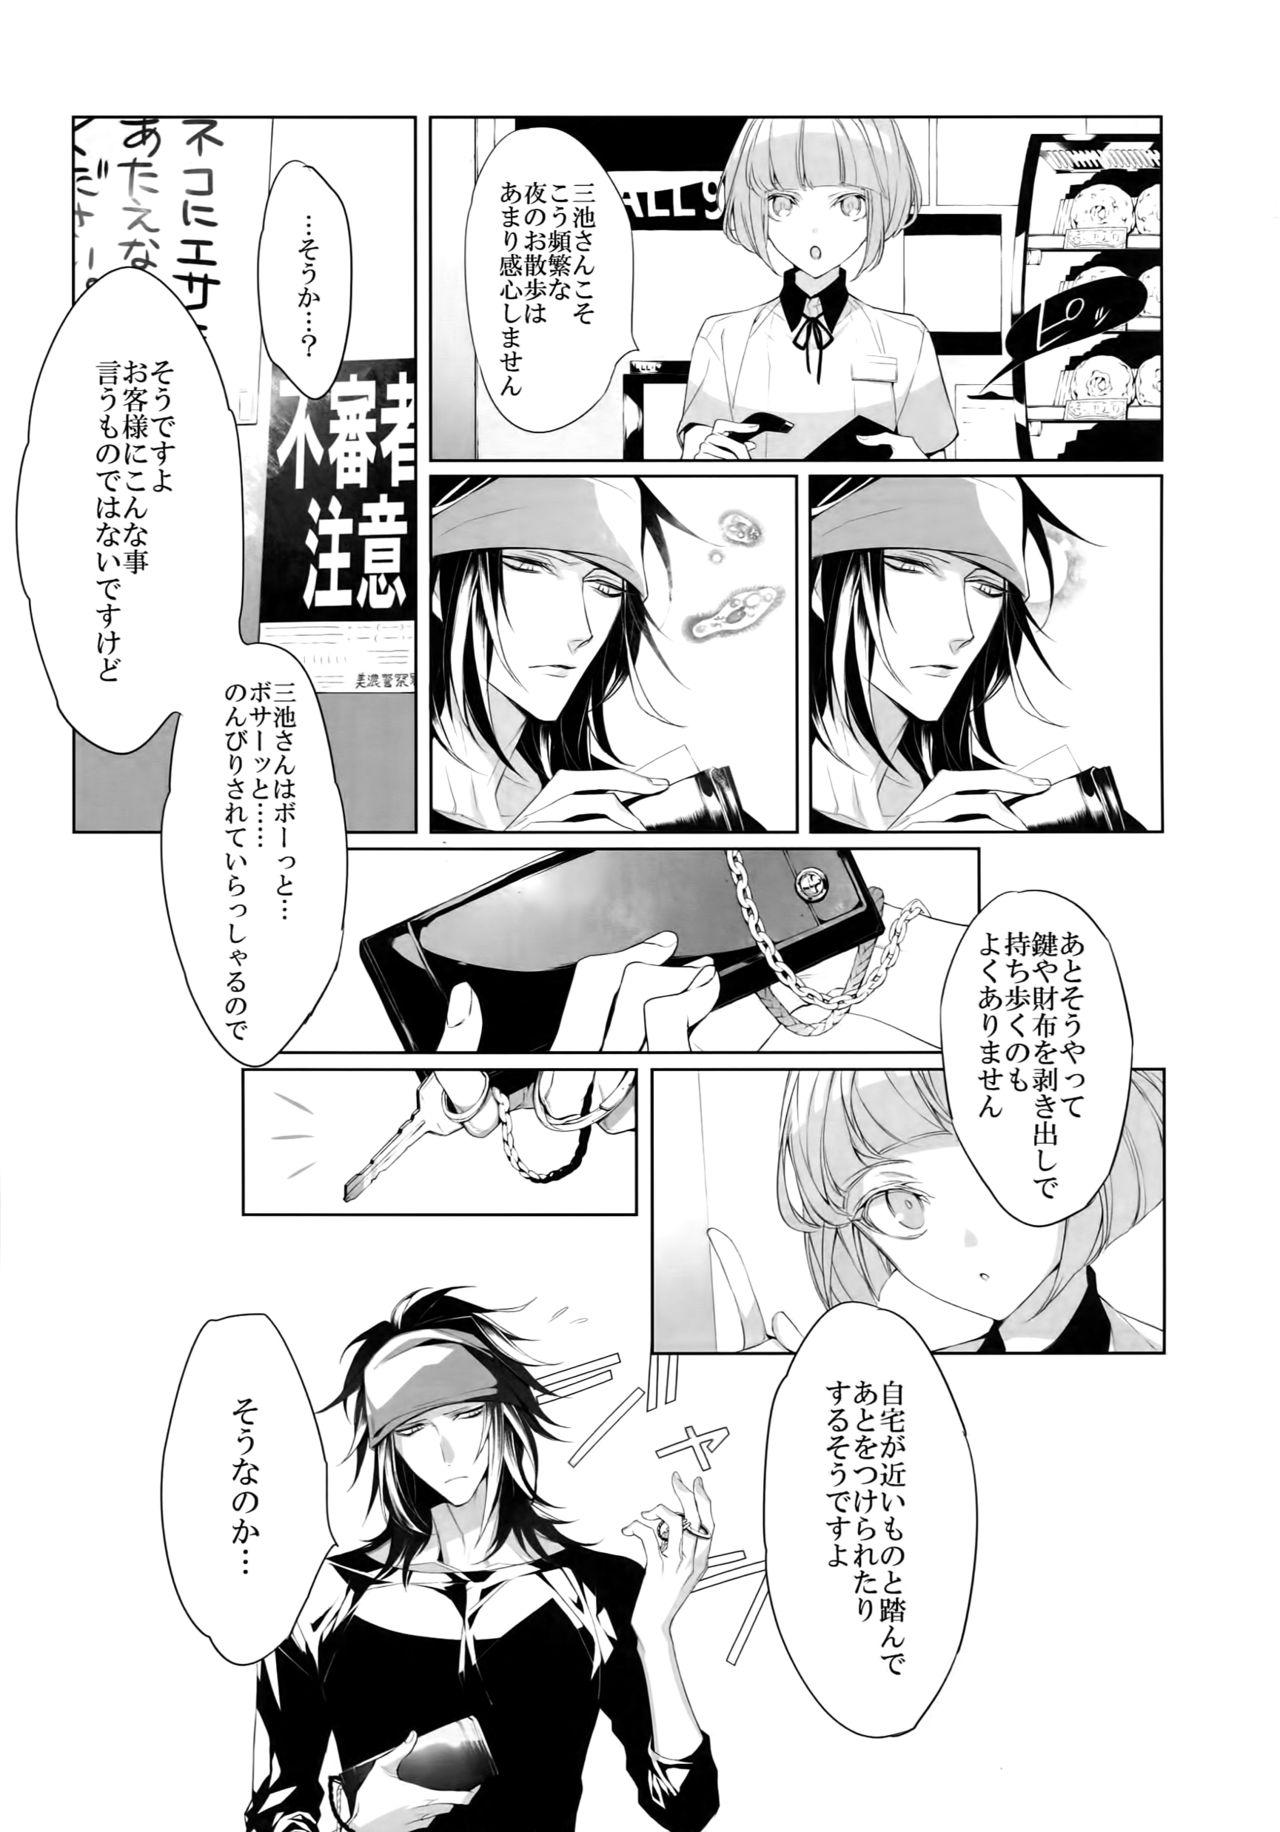 Transvestite Mitsu kon! - Touken ranbu Bulge - Page 6